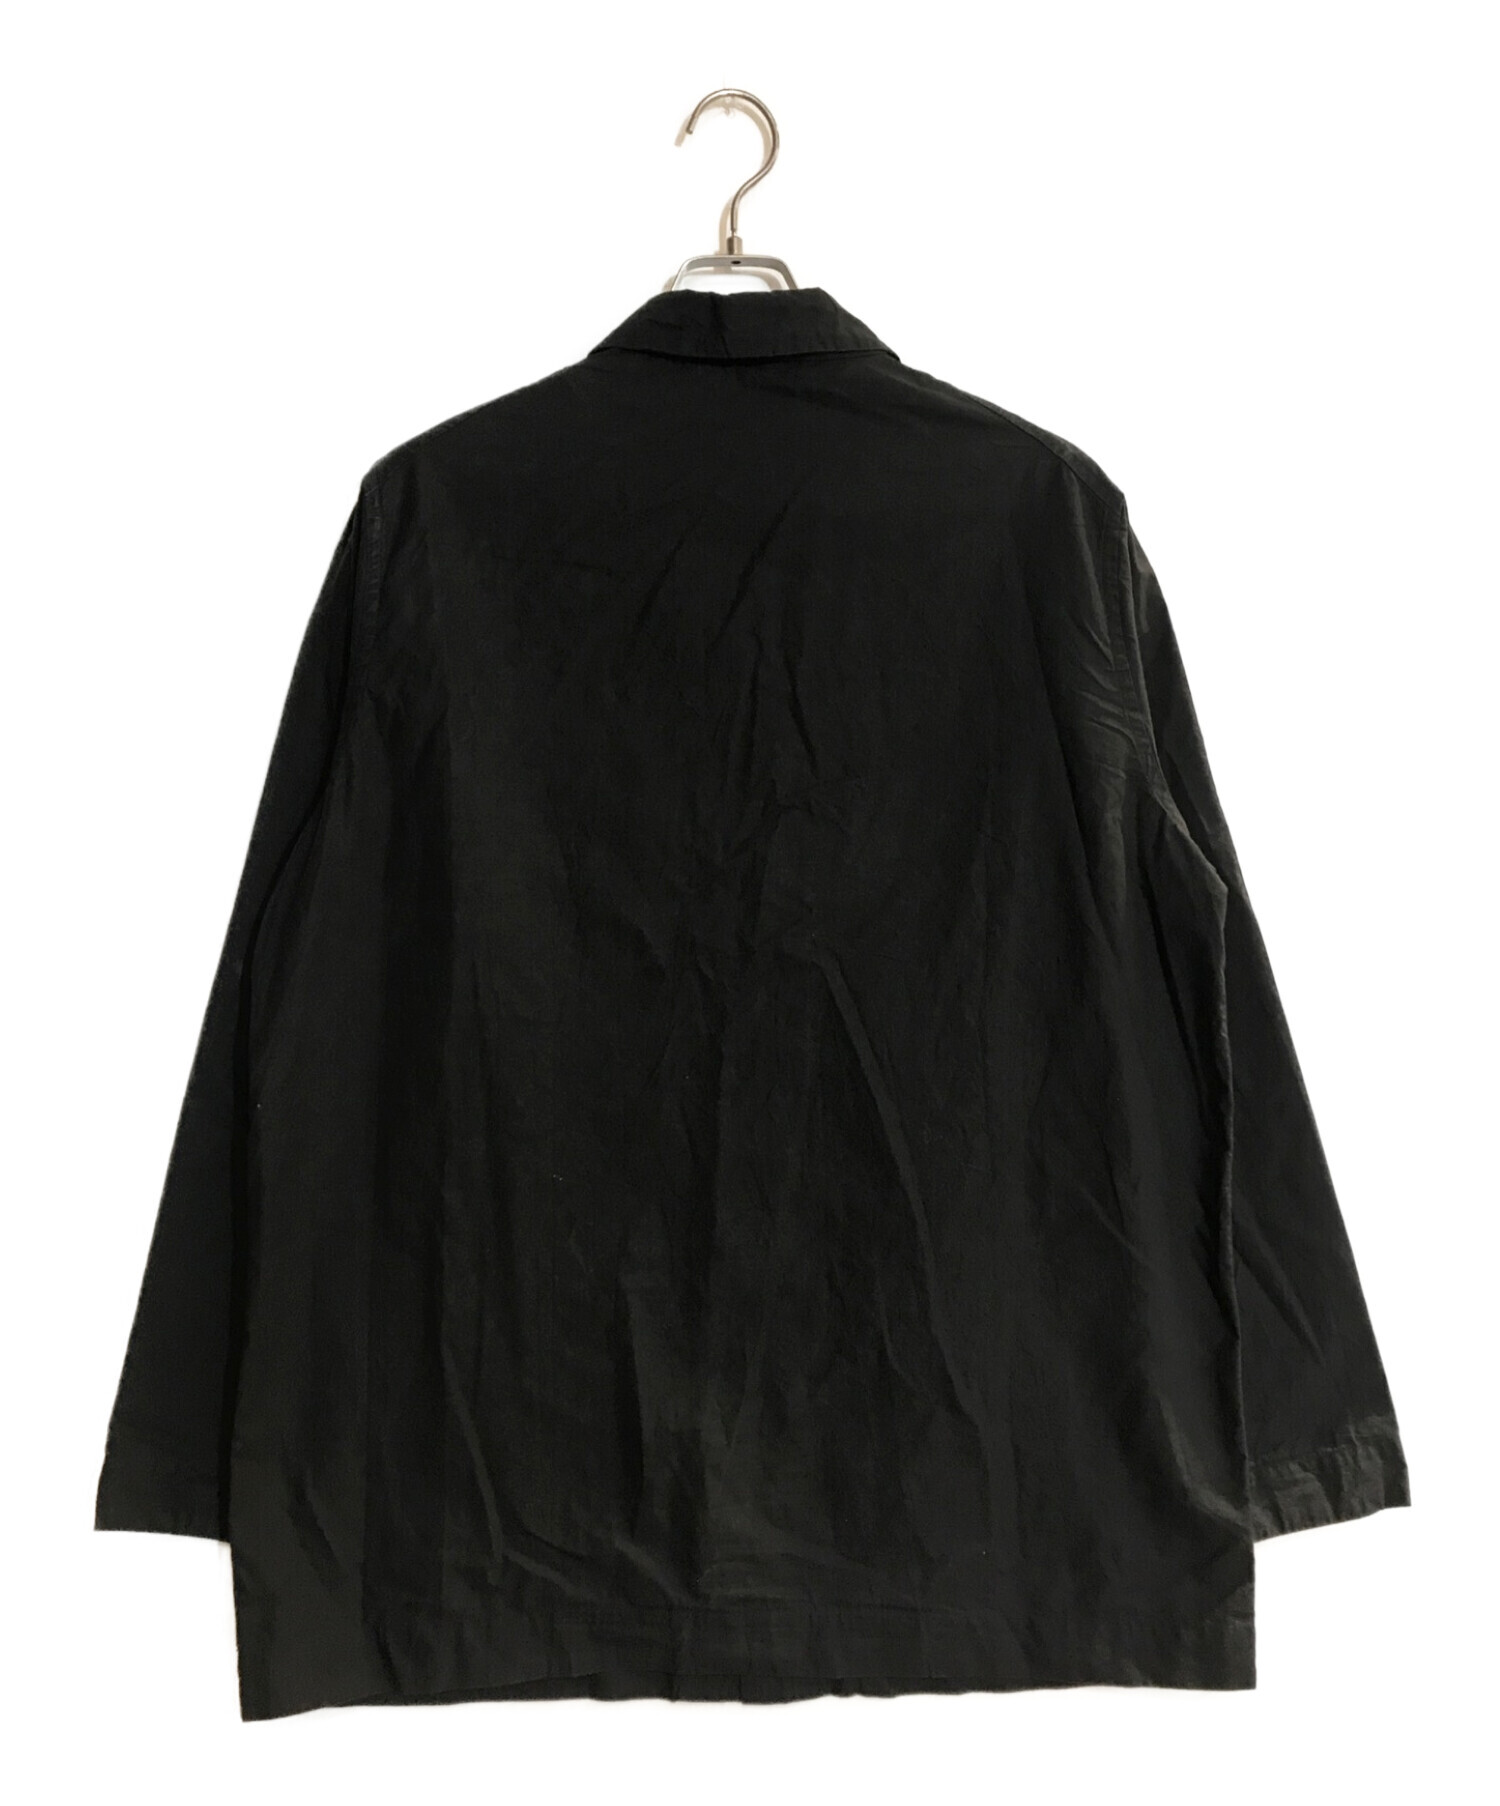 CASEY CASEY シャツジャケット VERGER BIS SHIRT - カバーオール